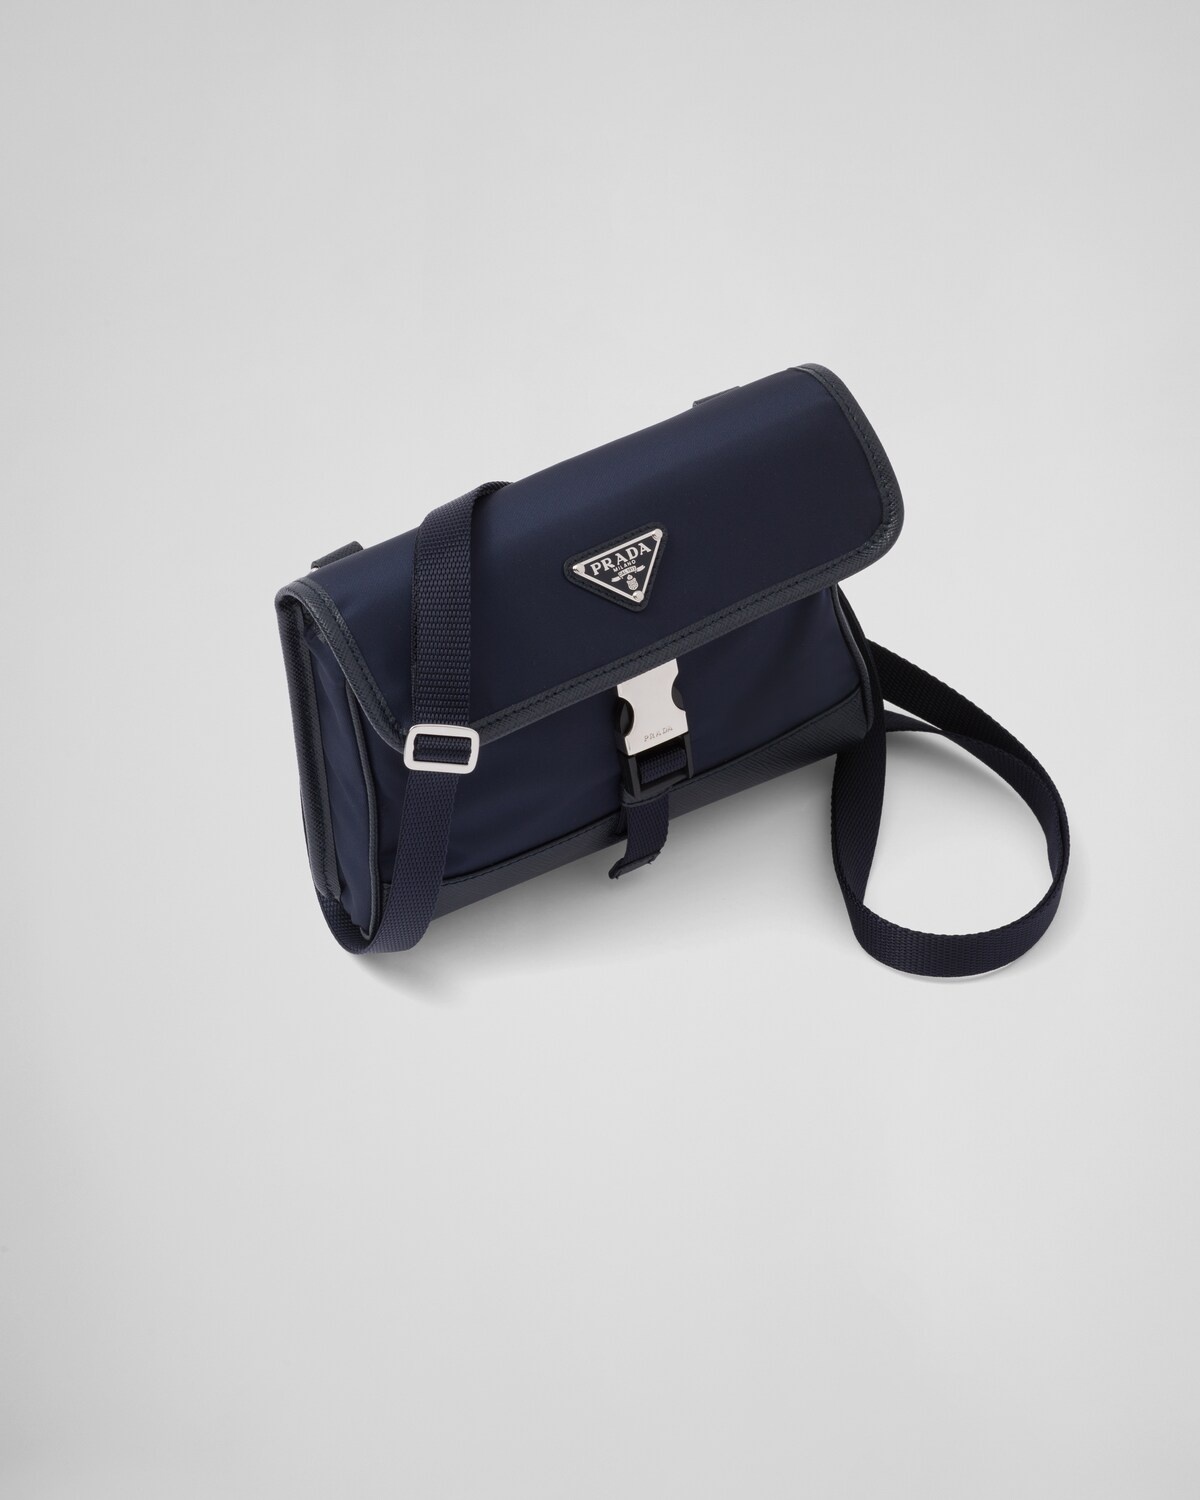 Re-Nylon and Saffiano leather smartphone case - 3